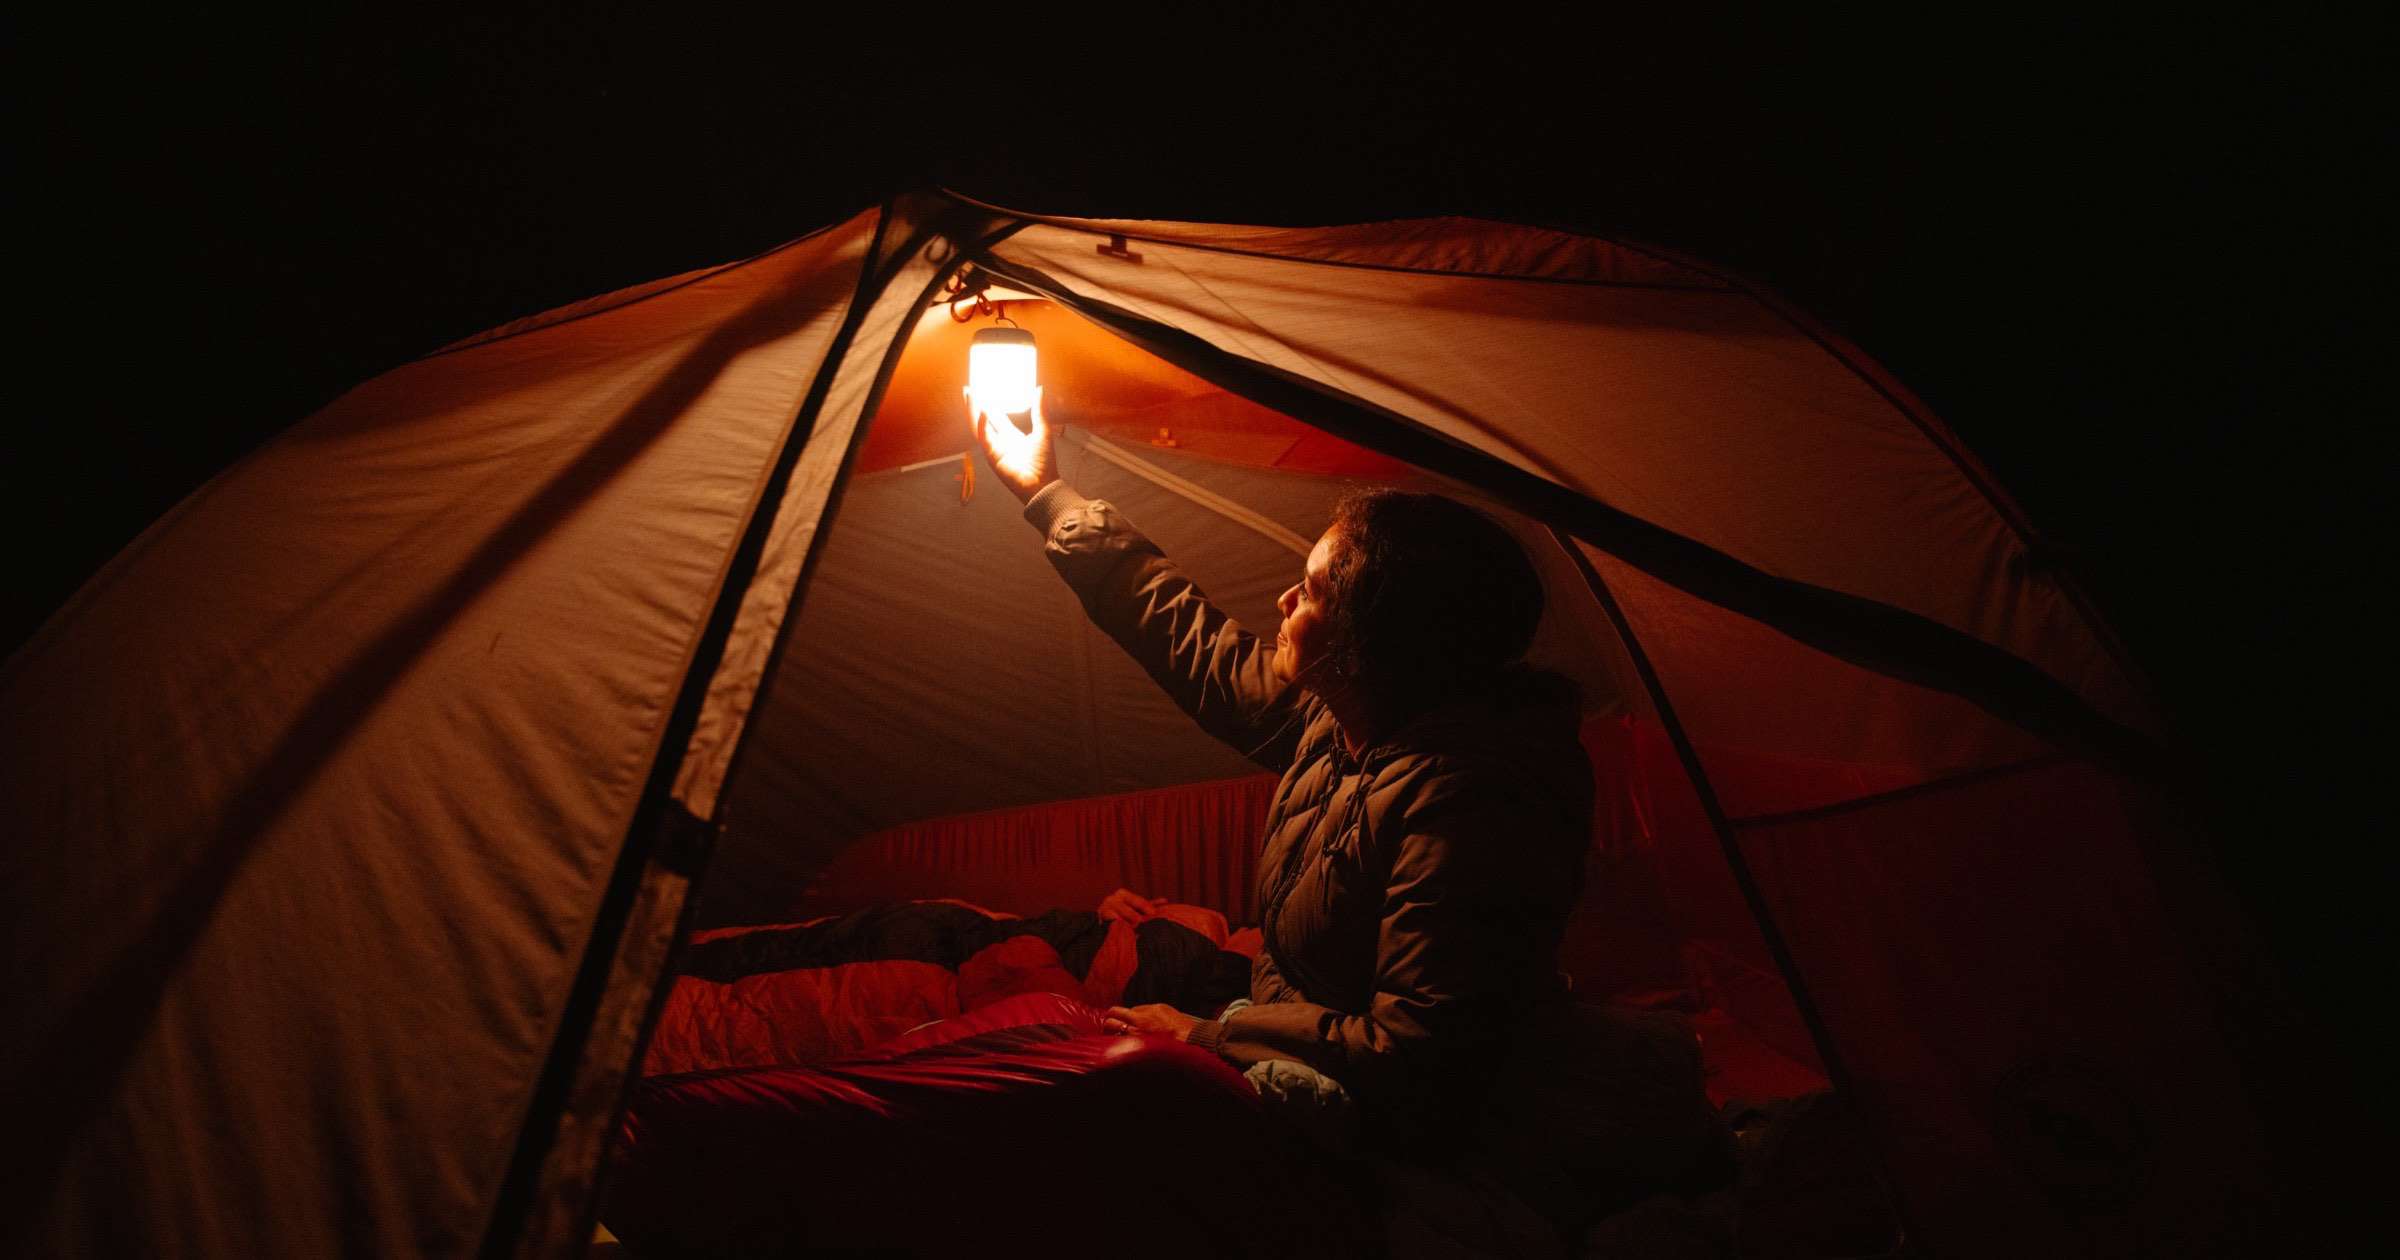 BioLite alpenglow camping lantern